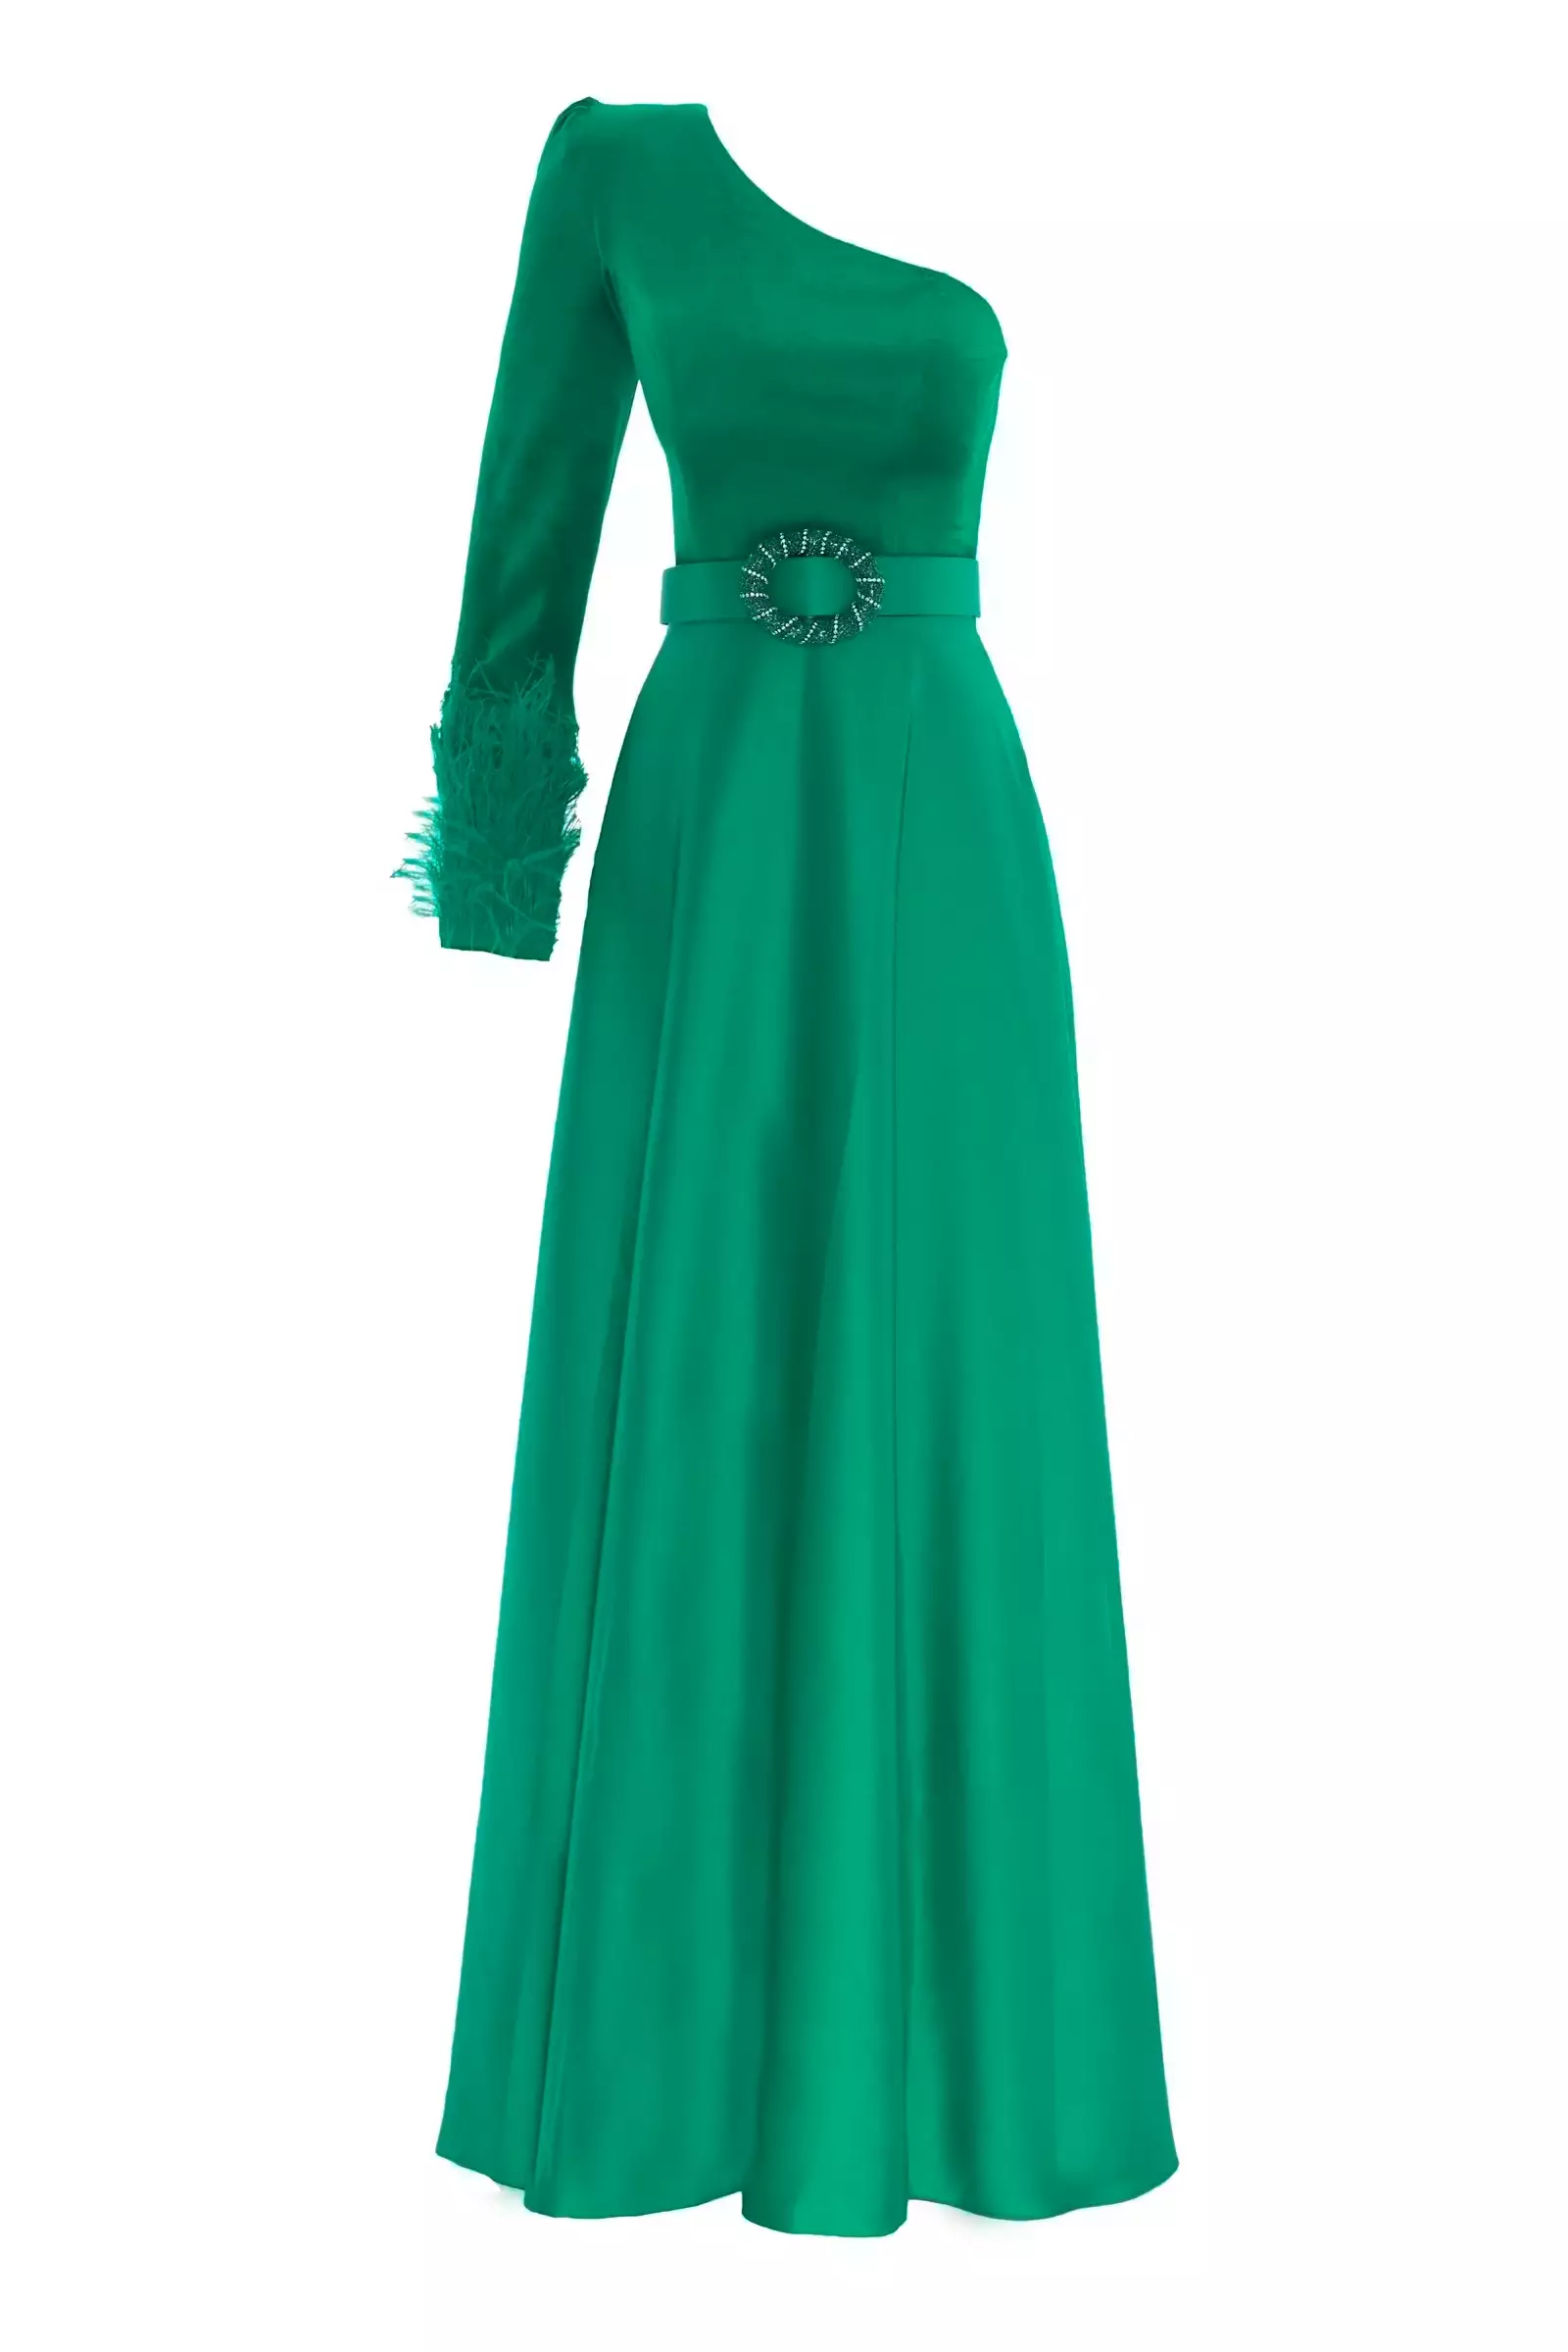 Green velvet one arm maxi dress